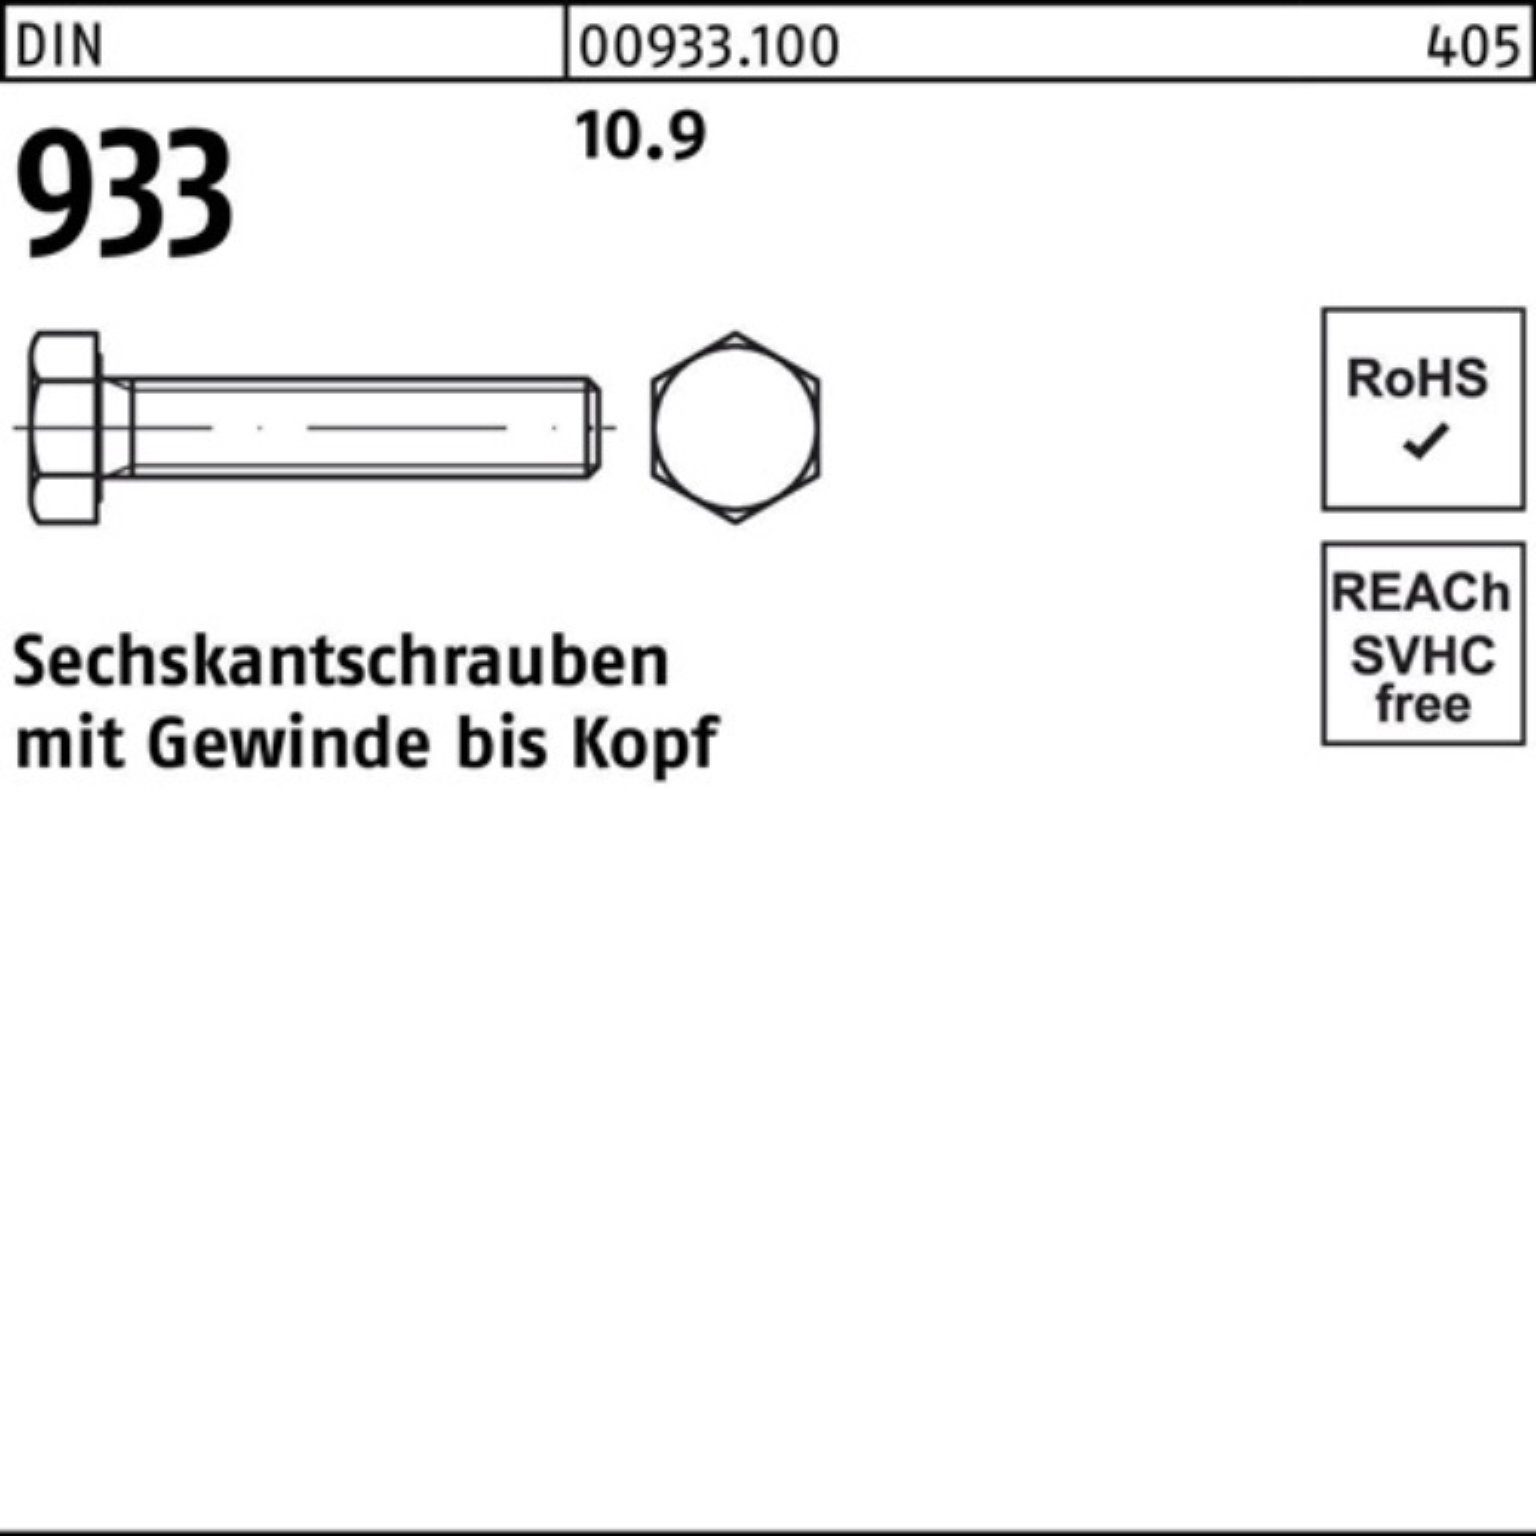 Sechskantschraube VG Pack 93 100er DIN Stück M20x Sechskantschraube 25 150 933 10.9 Reyher DIN